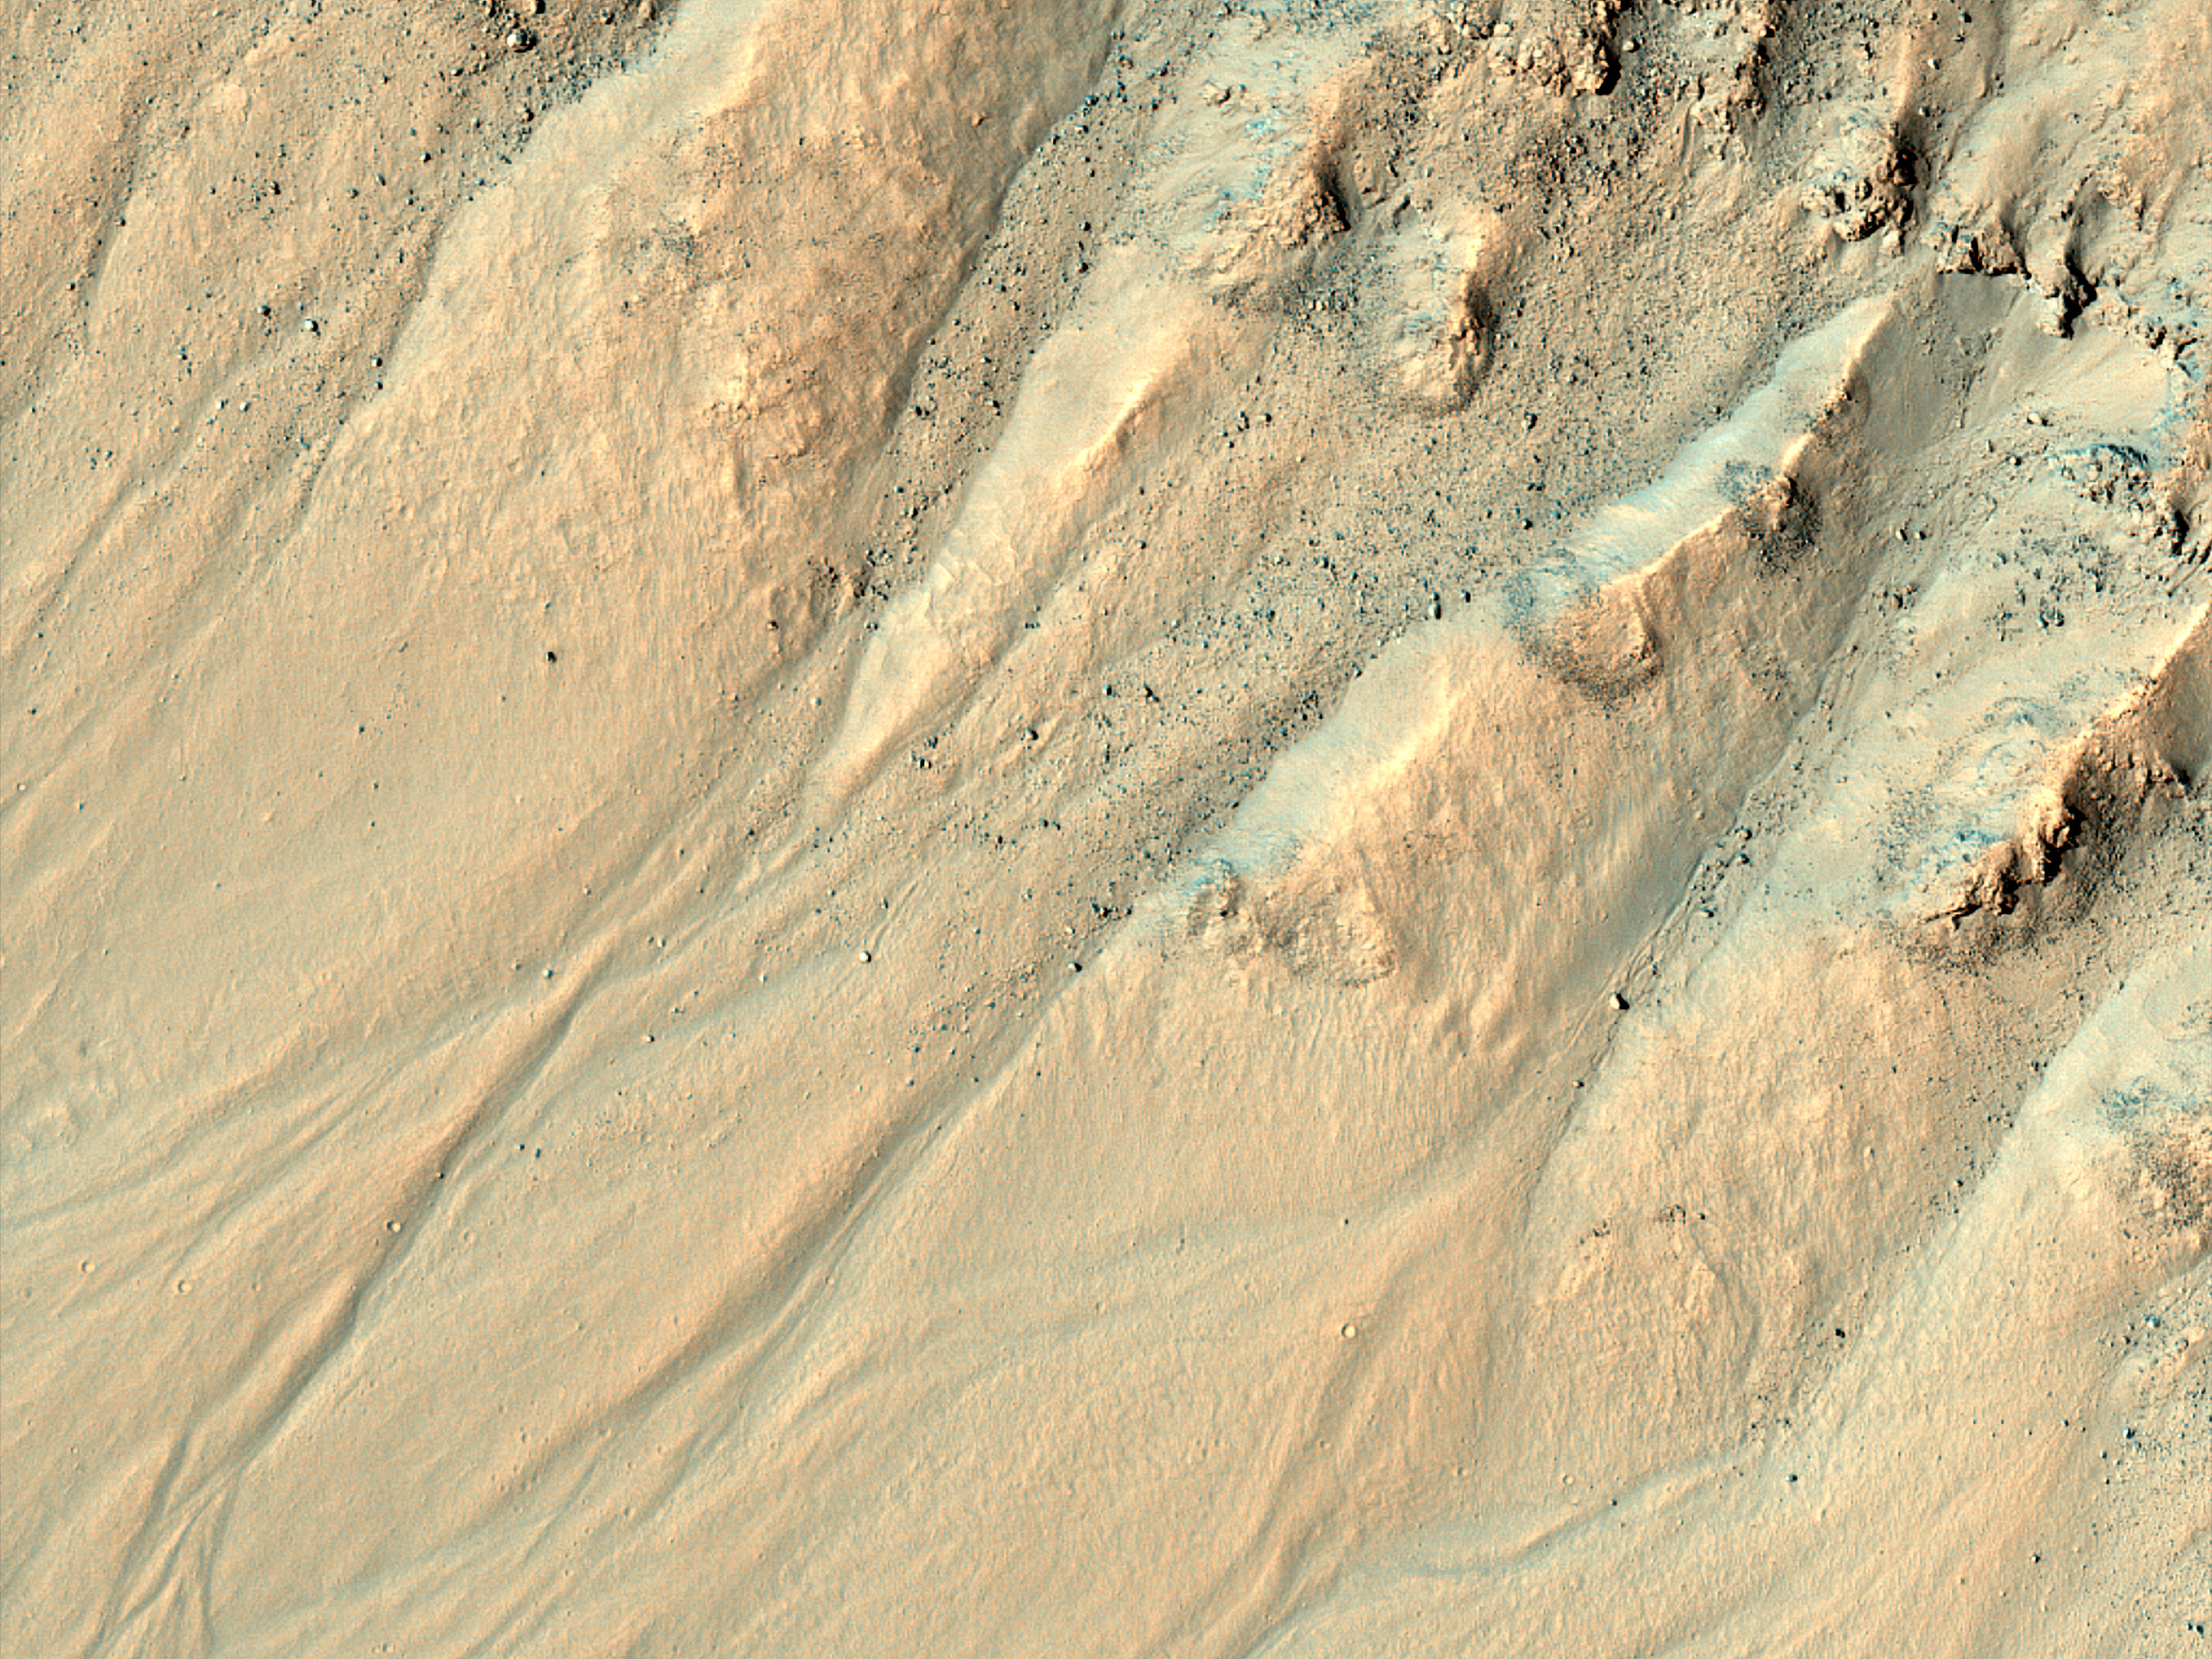 Gullies in a Crater in Terra Cimmeria